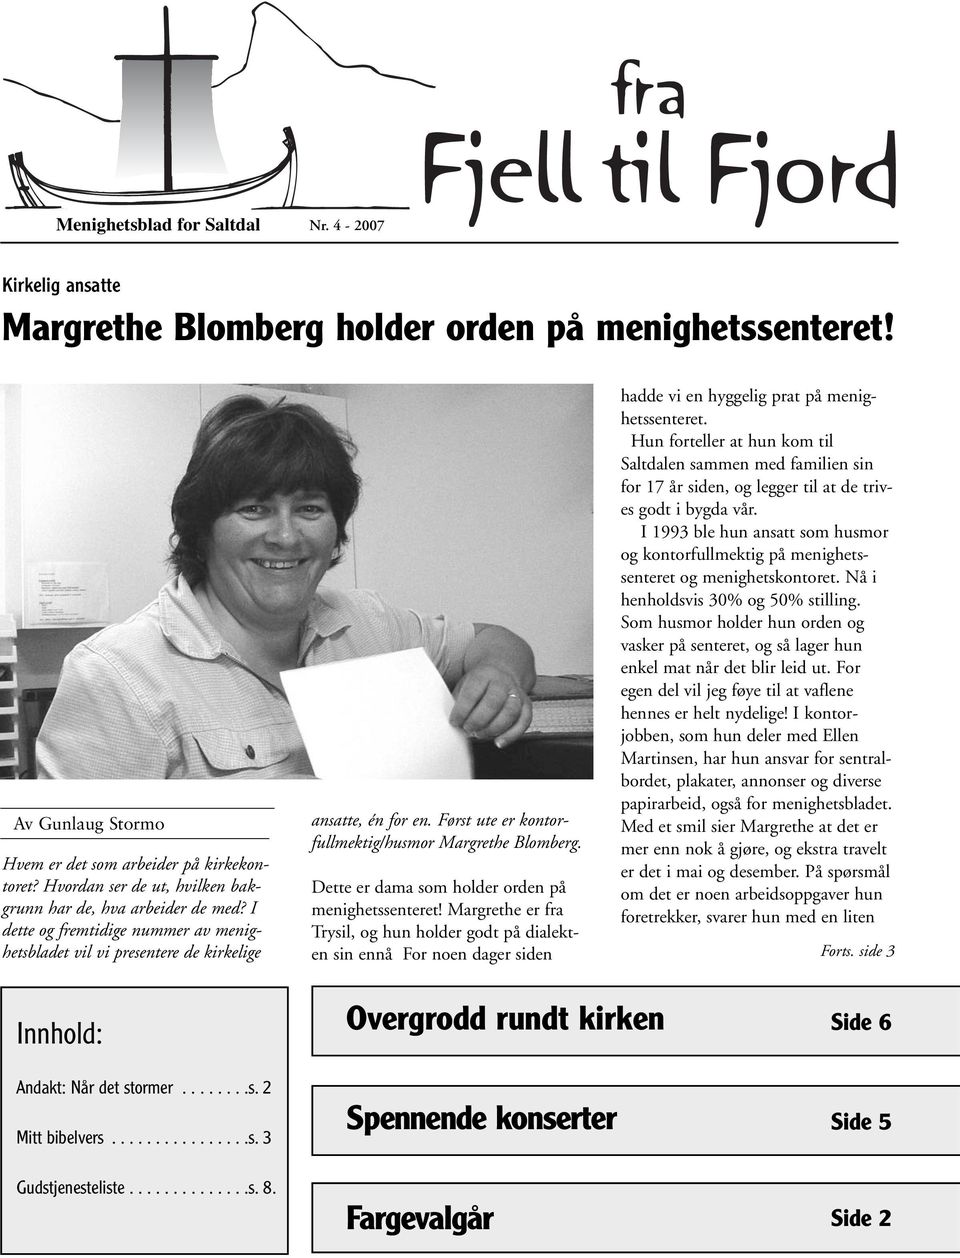 Først ute er kontorfullmektig/husmor Margrethe Blomberg. Dette er dama som holder orden på menighetssenteret!